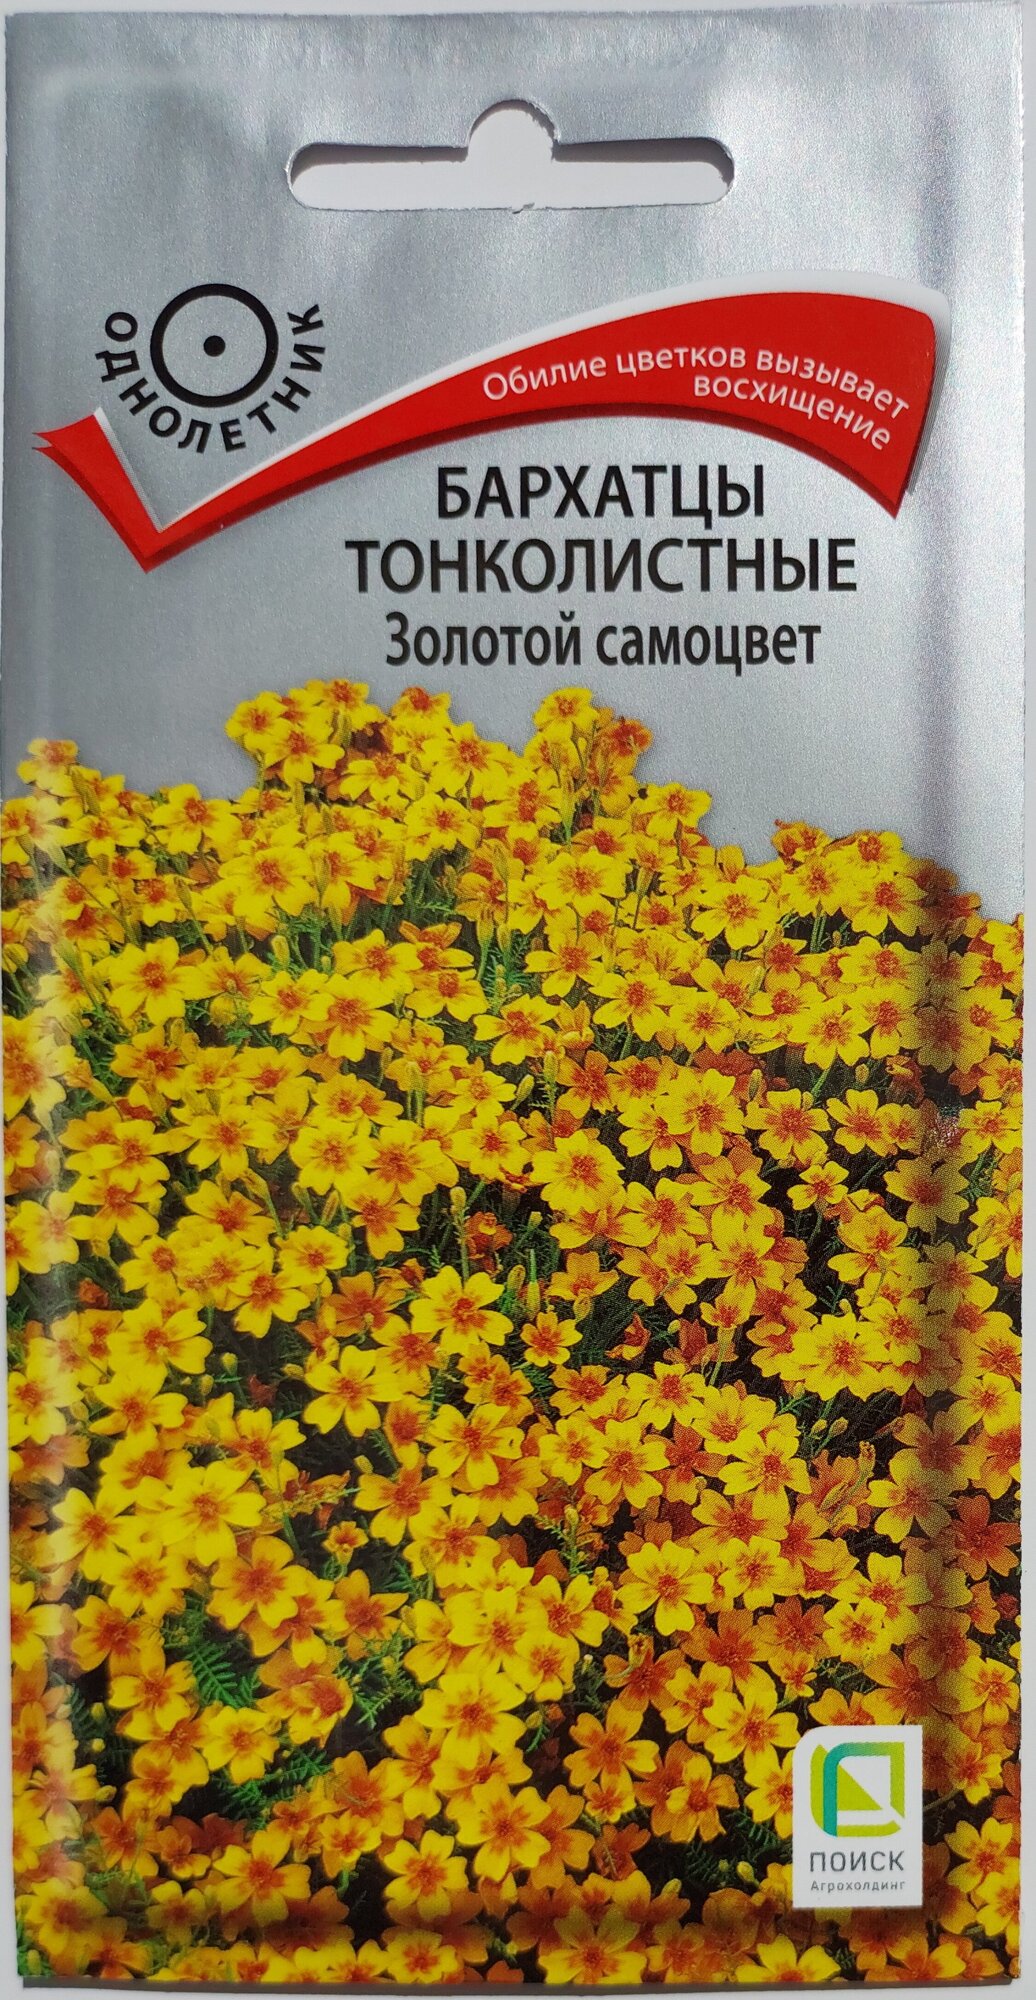 Семена Бархатцы тонколистные Золотой Самоцвет 0.1 грамма семян Поиск